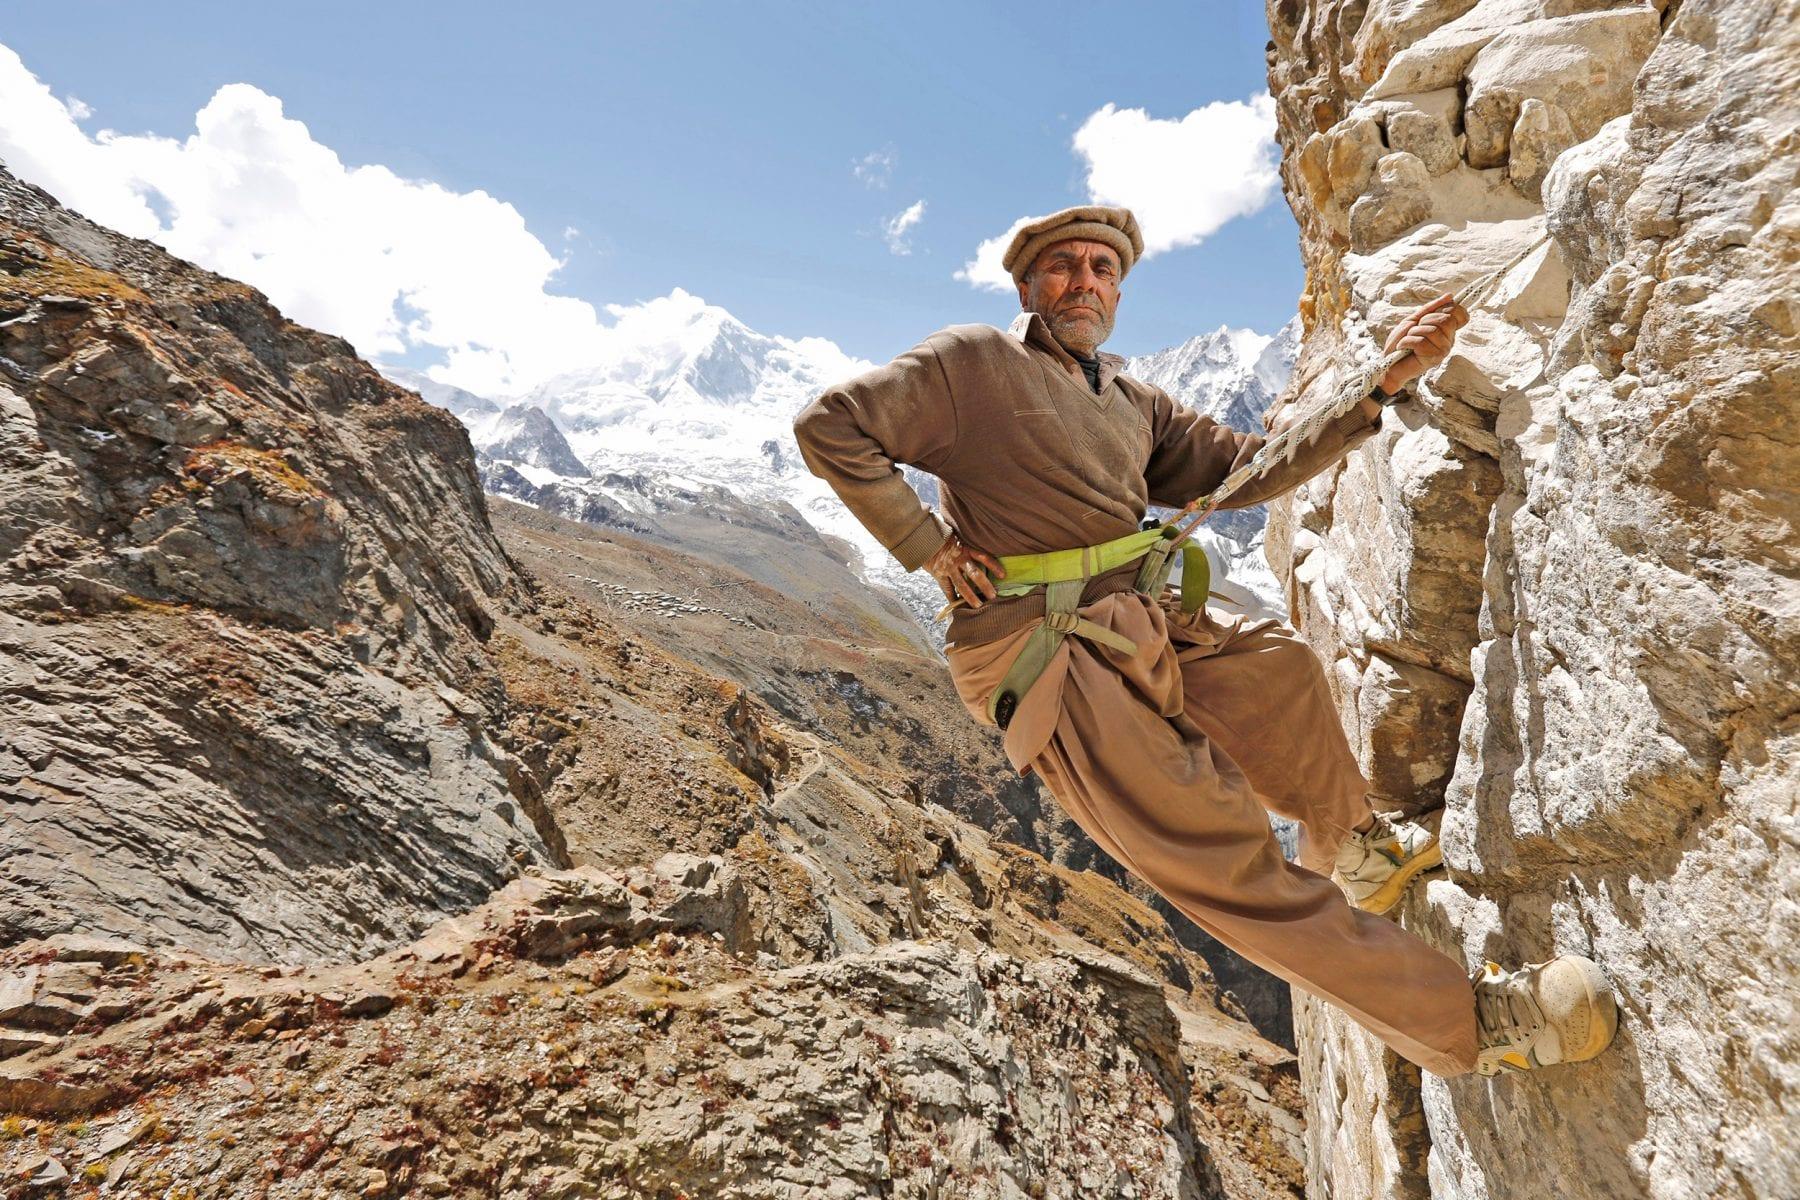 Gemstone miner in Northern Pakistan 2015